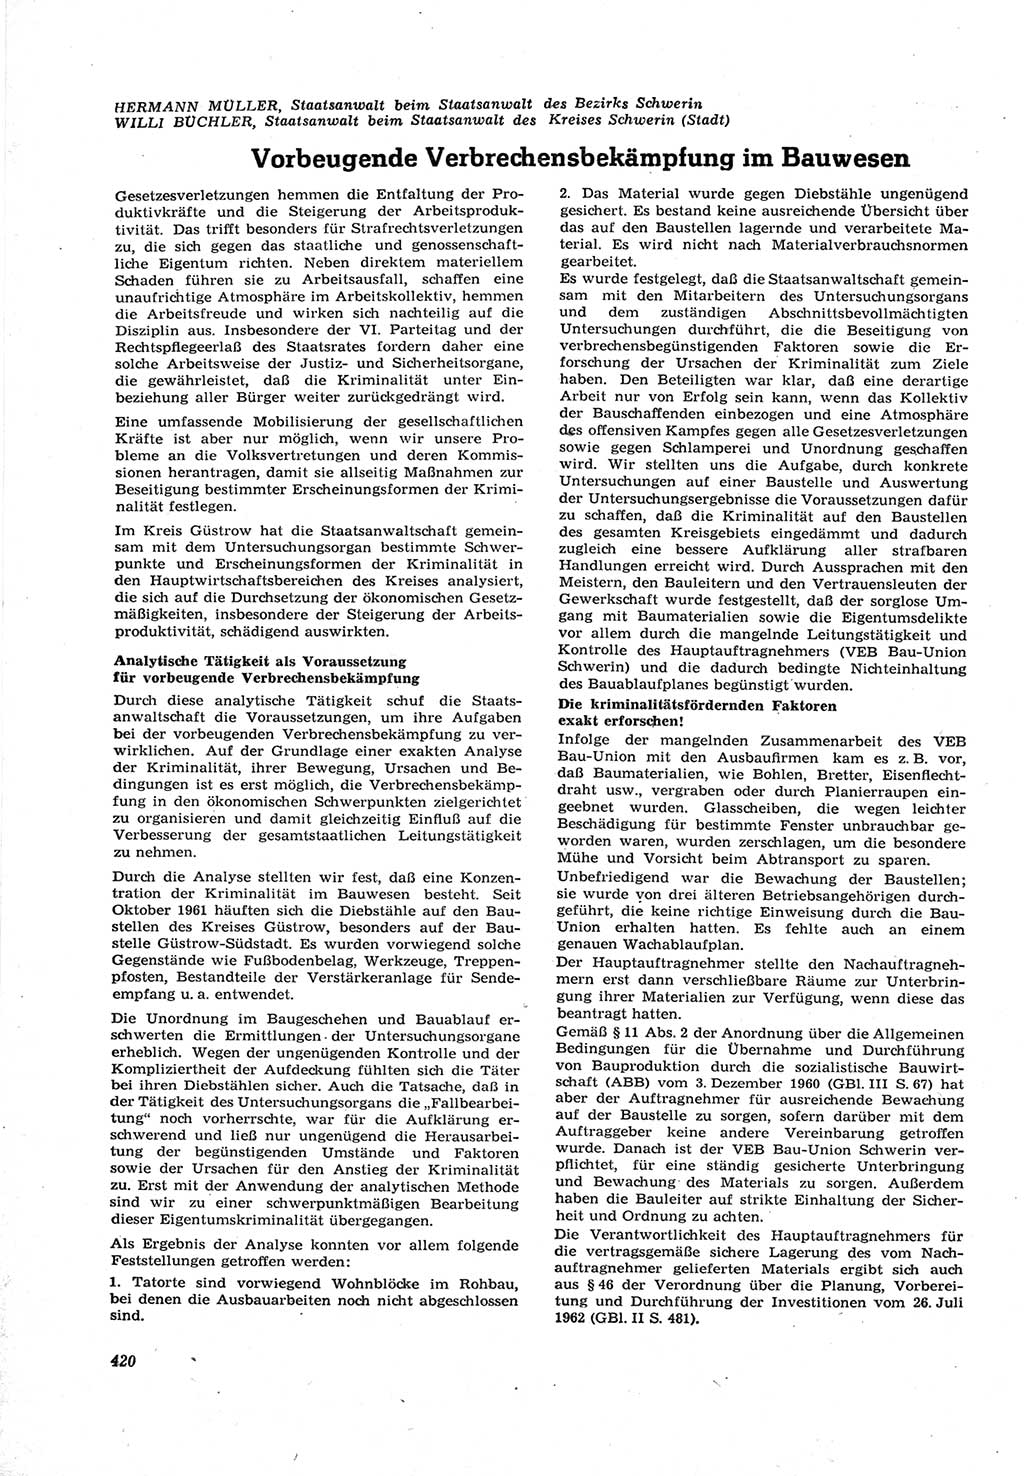 Neue Justiz (NJ), Zeitschrift für Recht und Rechtswissenschaft [Deutsche Demokratische Republik (DDR)], 17. Jahrgang 1963, Seite 420 (NJ DDR 1963, S. 420)